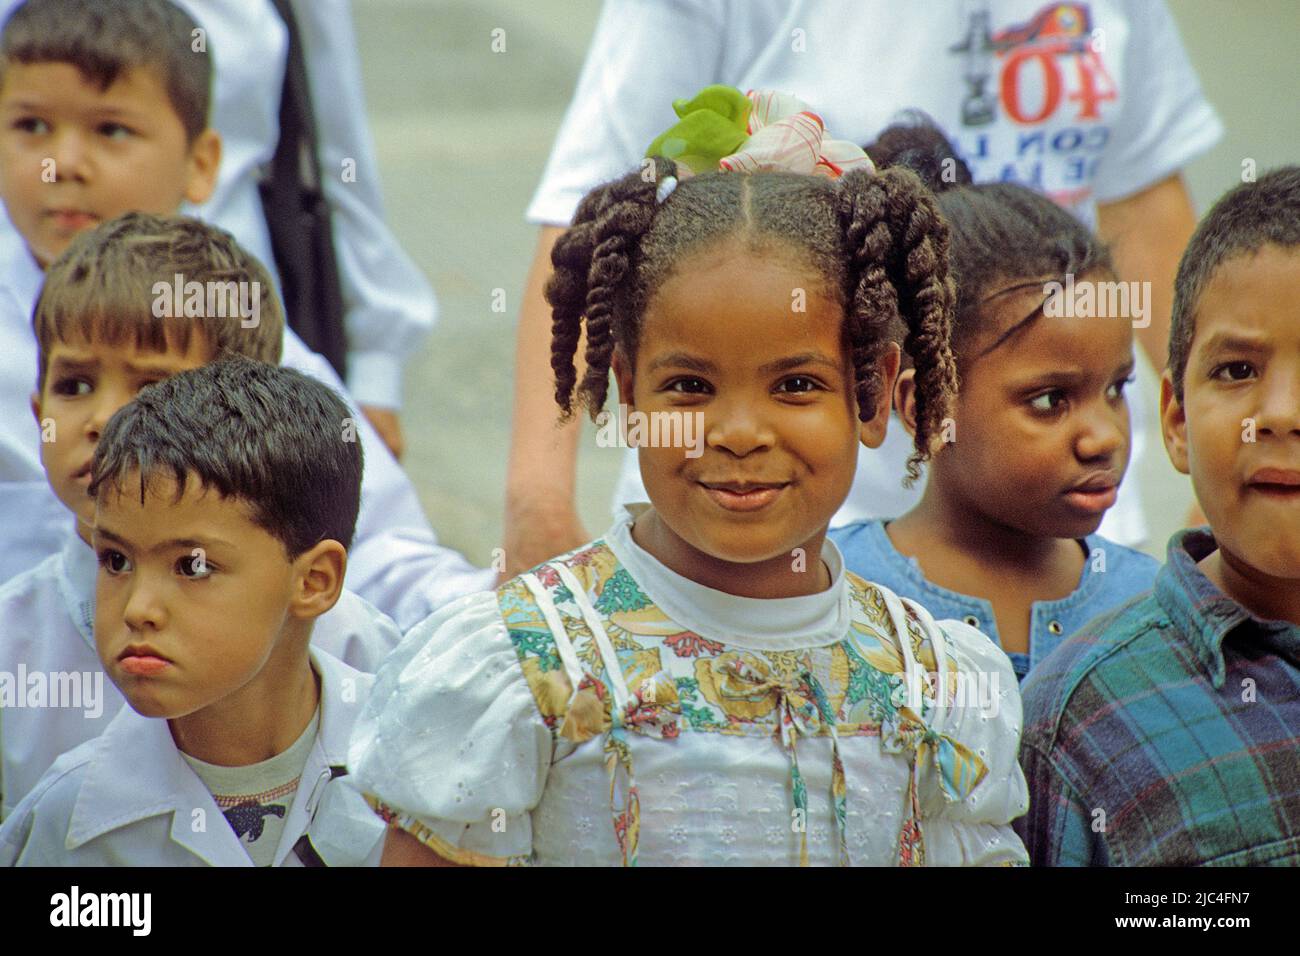 Kubanische Kinder in der Altstadt von Havanna, Kuba, Karibik | Cuban children in the old town of Havana, Cuba, Caribbean Stock Photo